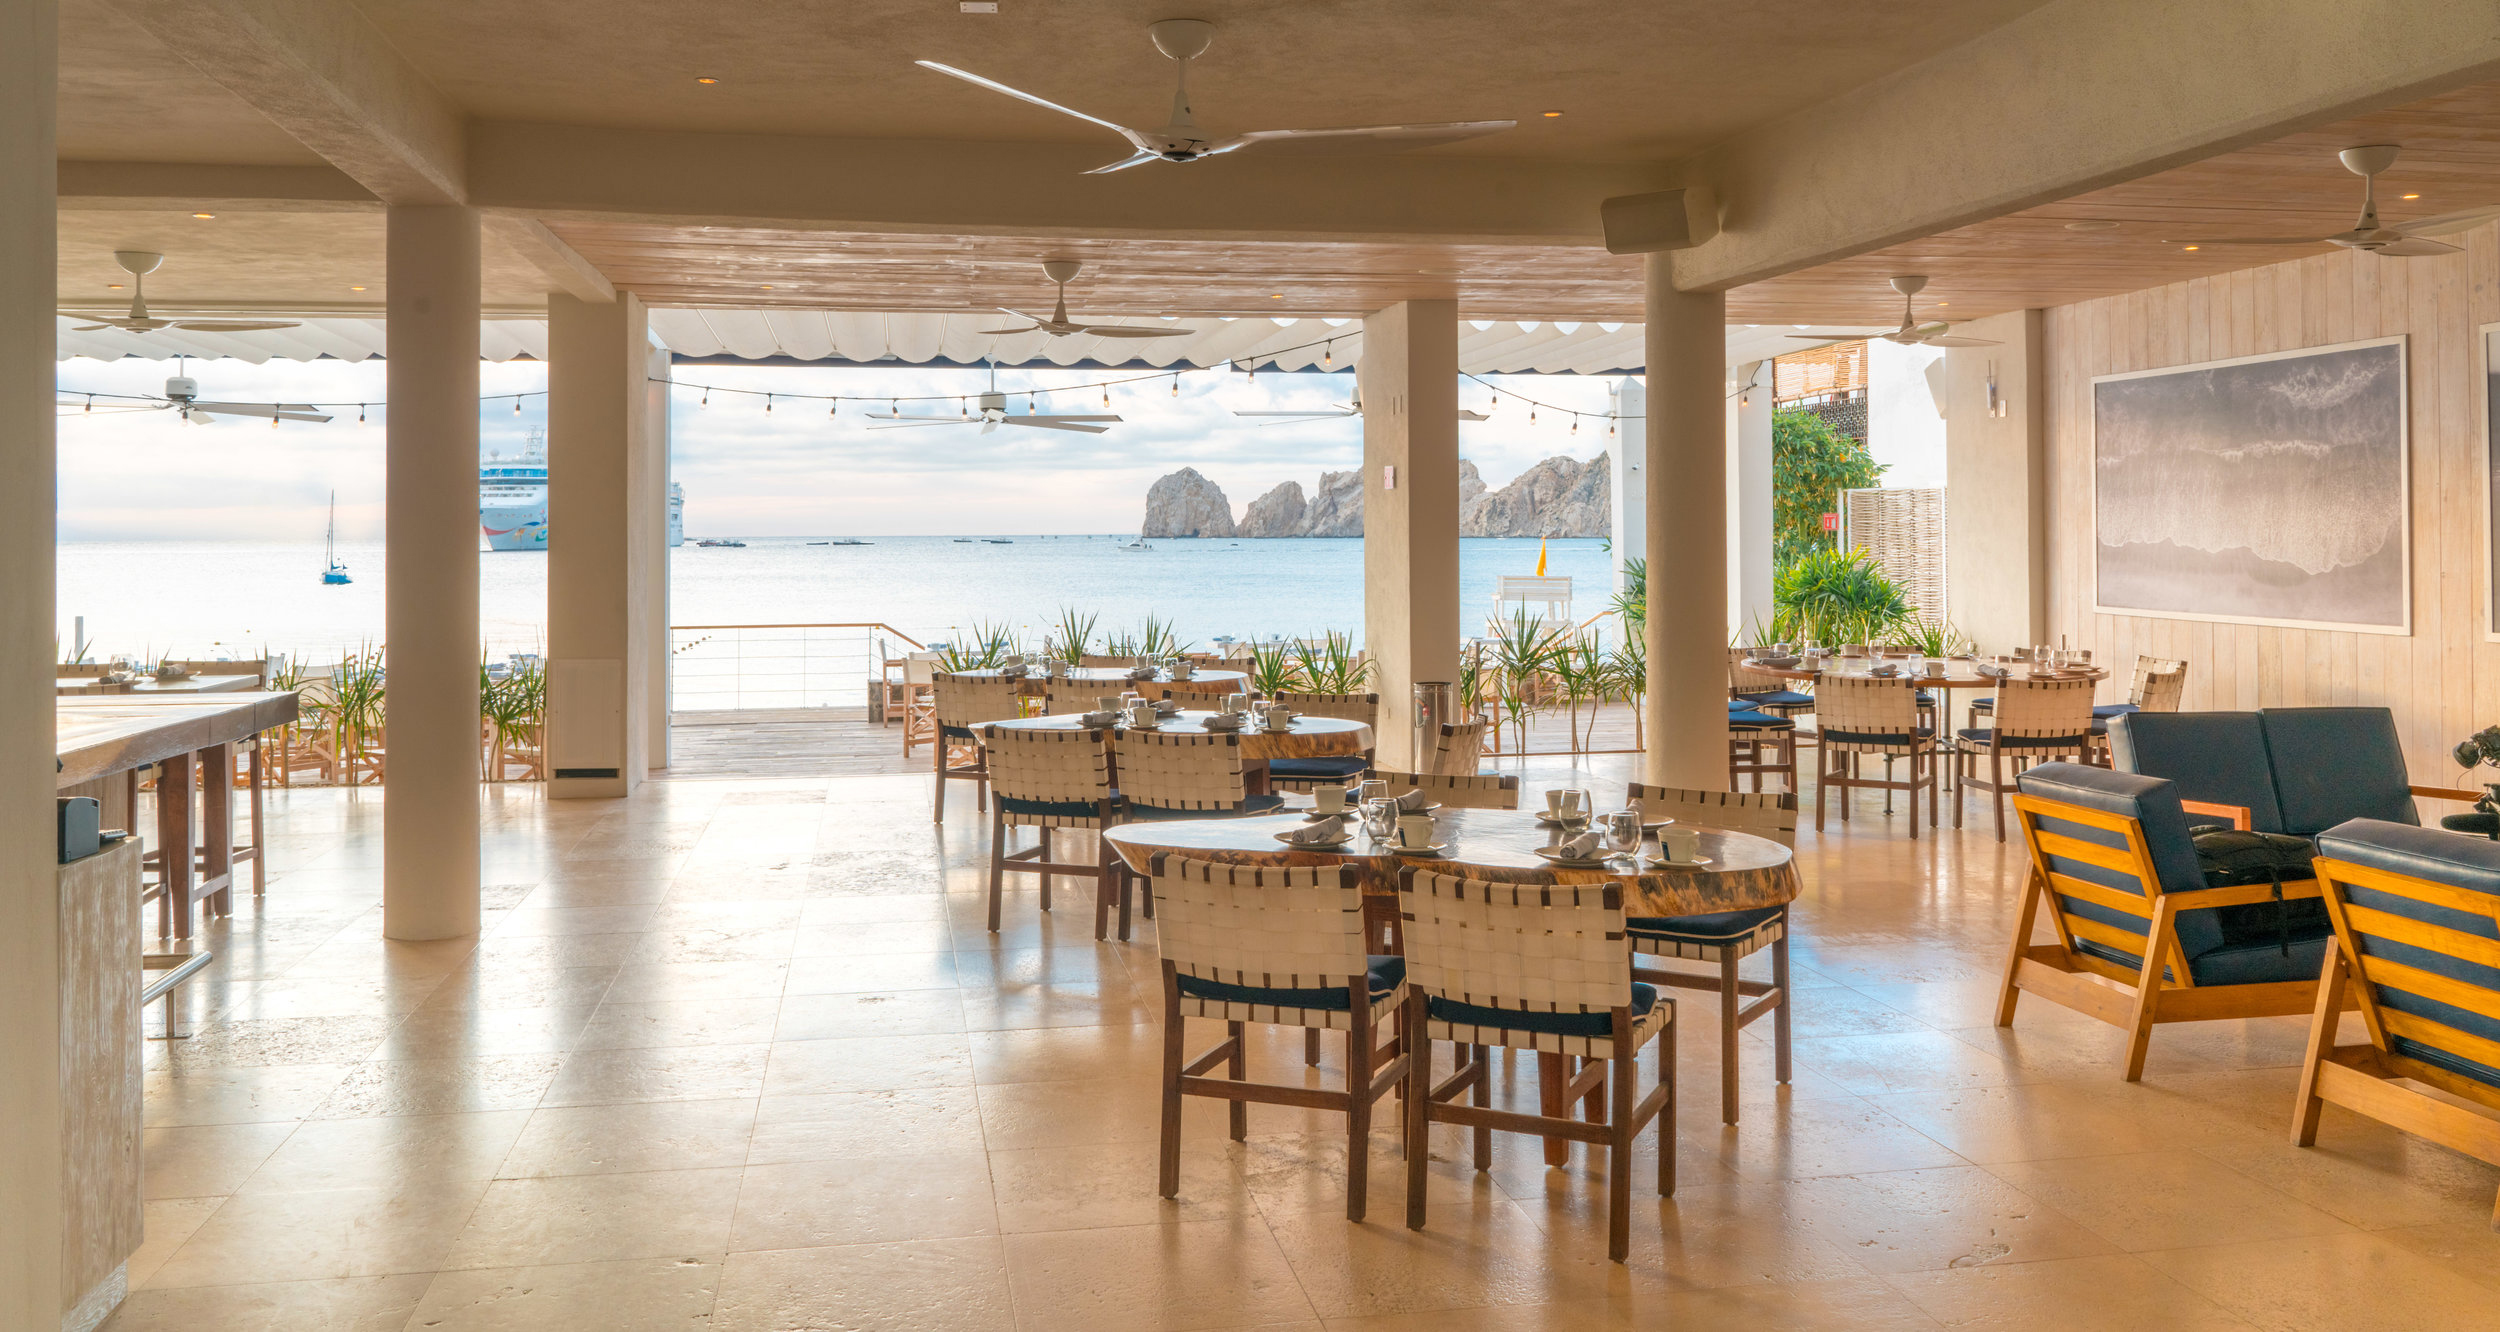 SUR Cabo San Lucas Beachfront restaurant and beach club